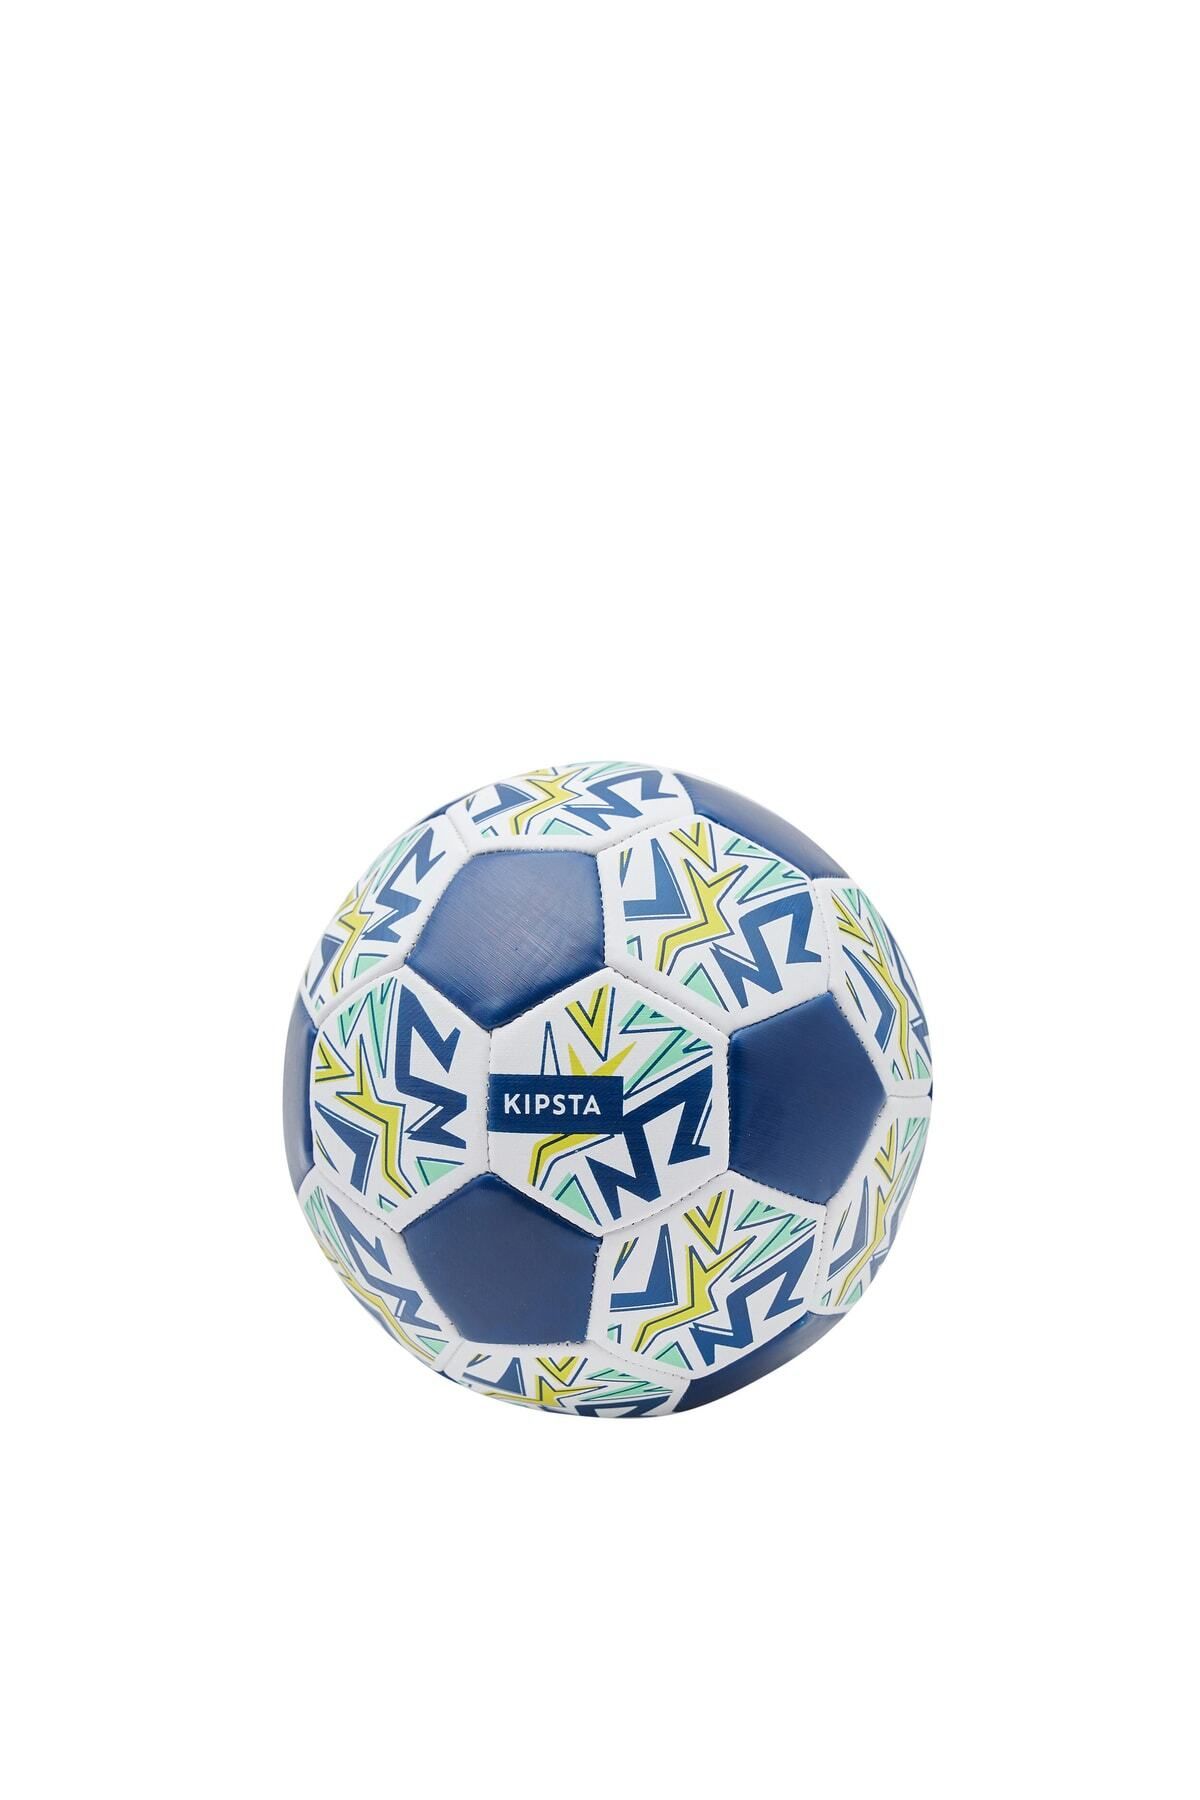 Decathlon Kipsta Öğretici Futbol Topu - 1 Numara - Beyaz / Mavi - Learning Ball